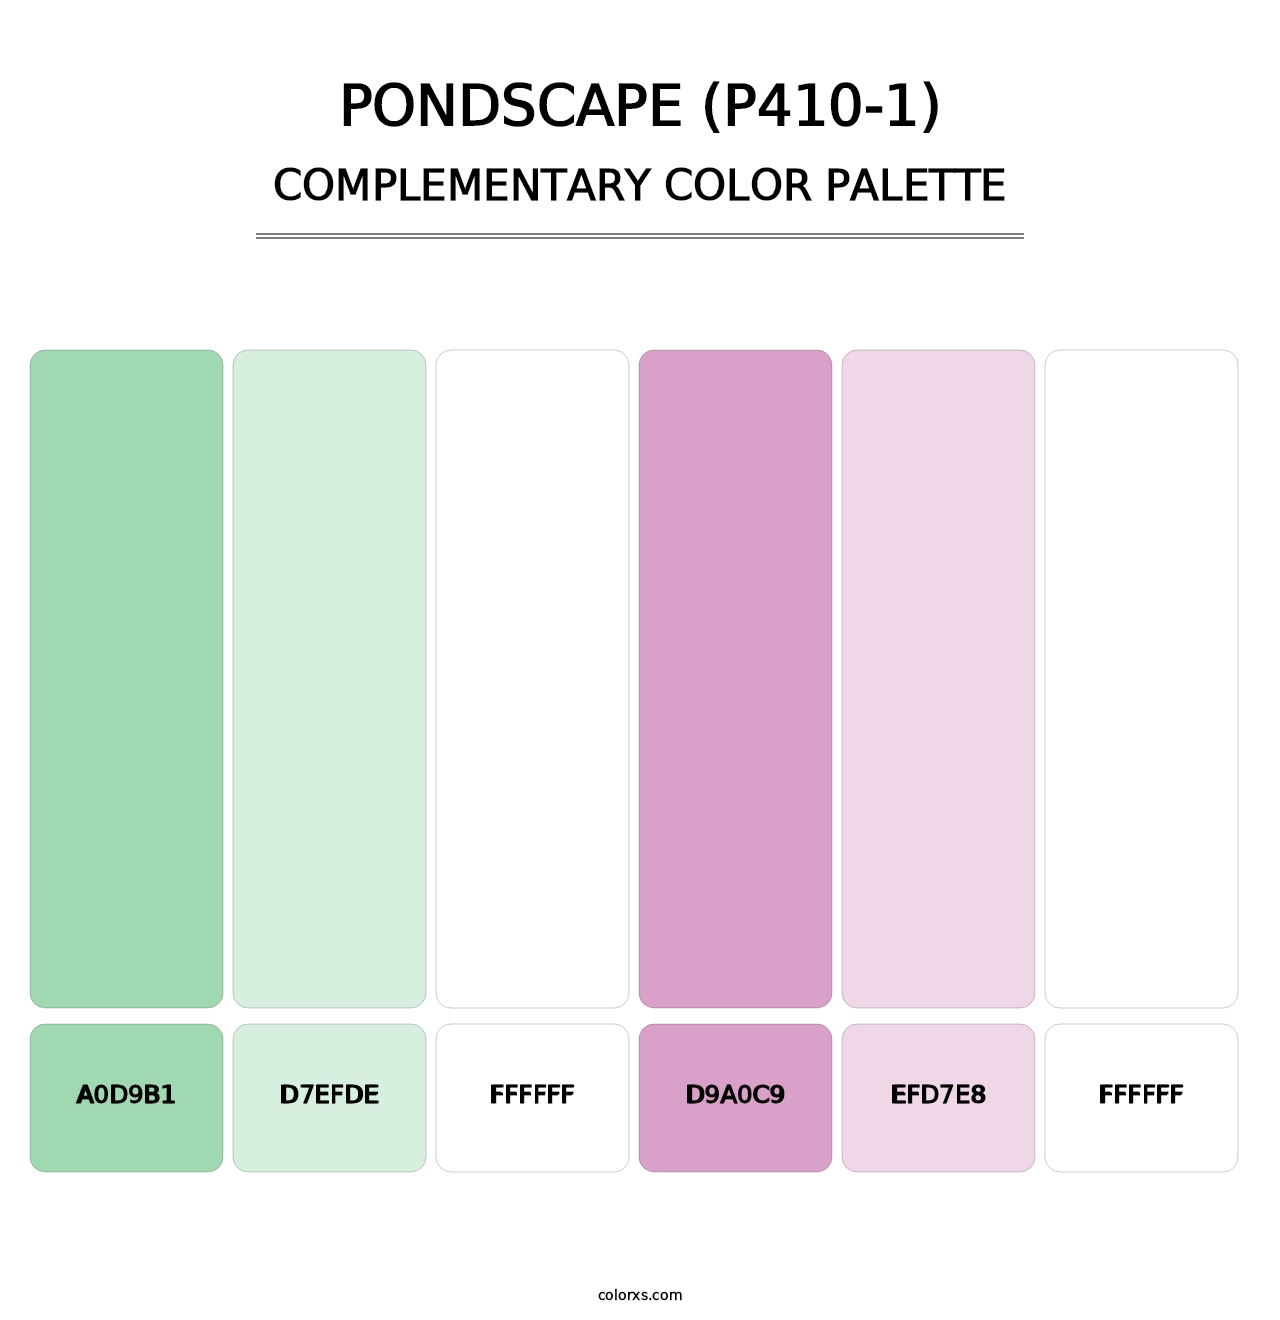 Pondscape (P410-1) - Complementary Color Palette